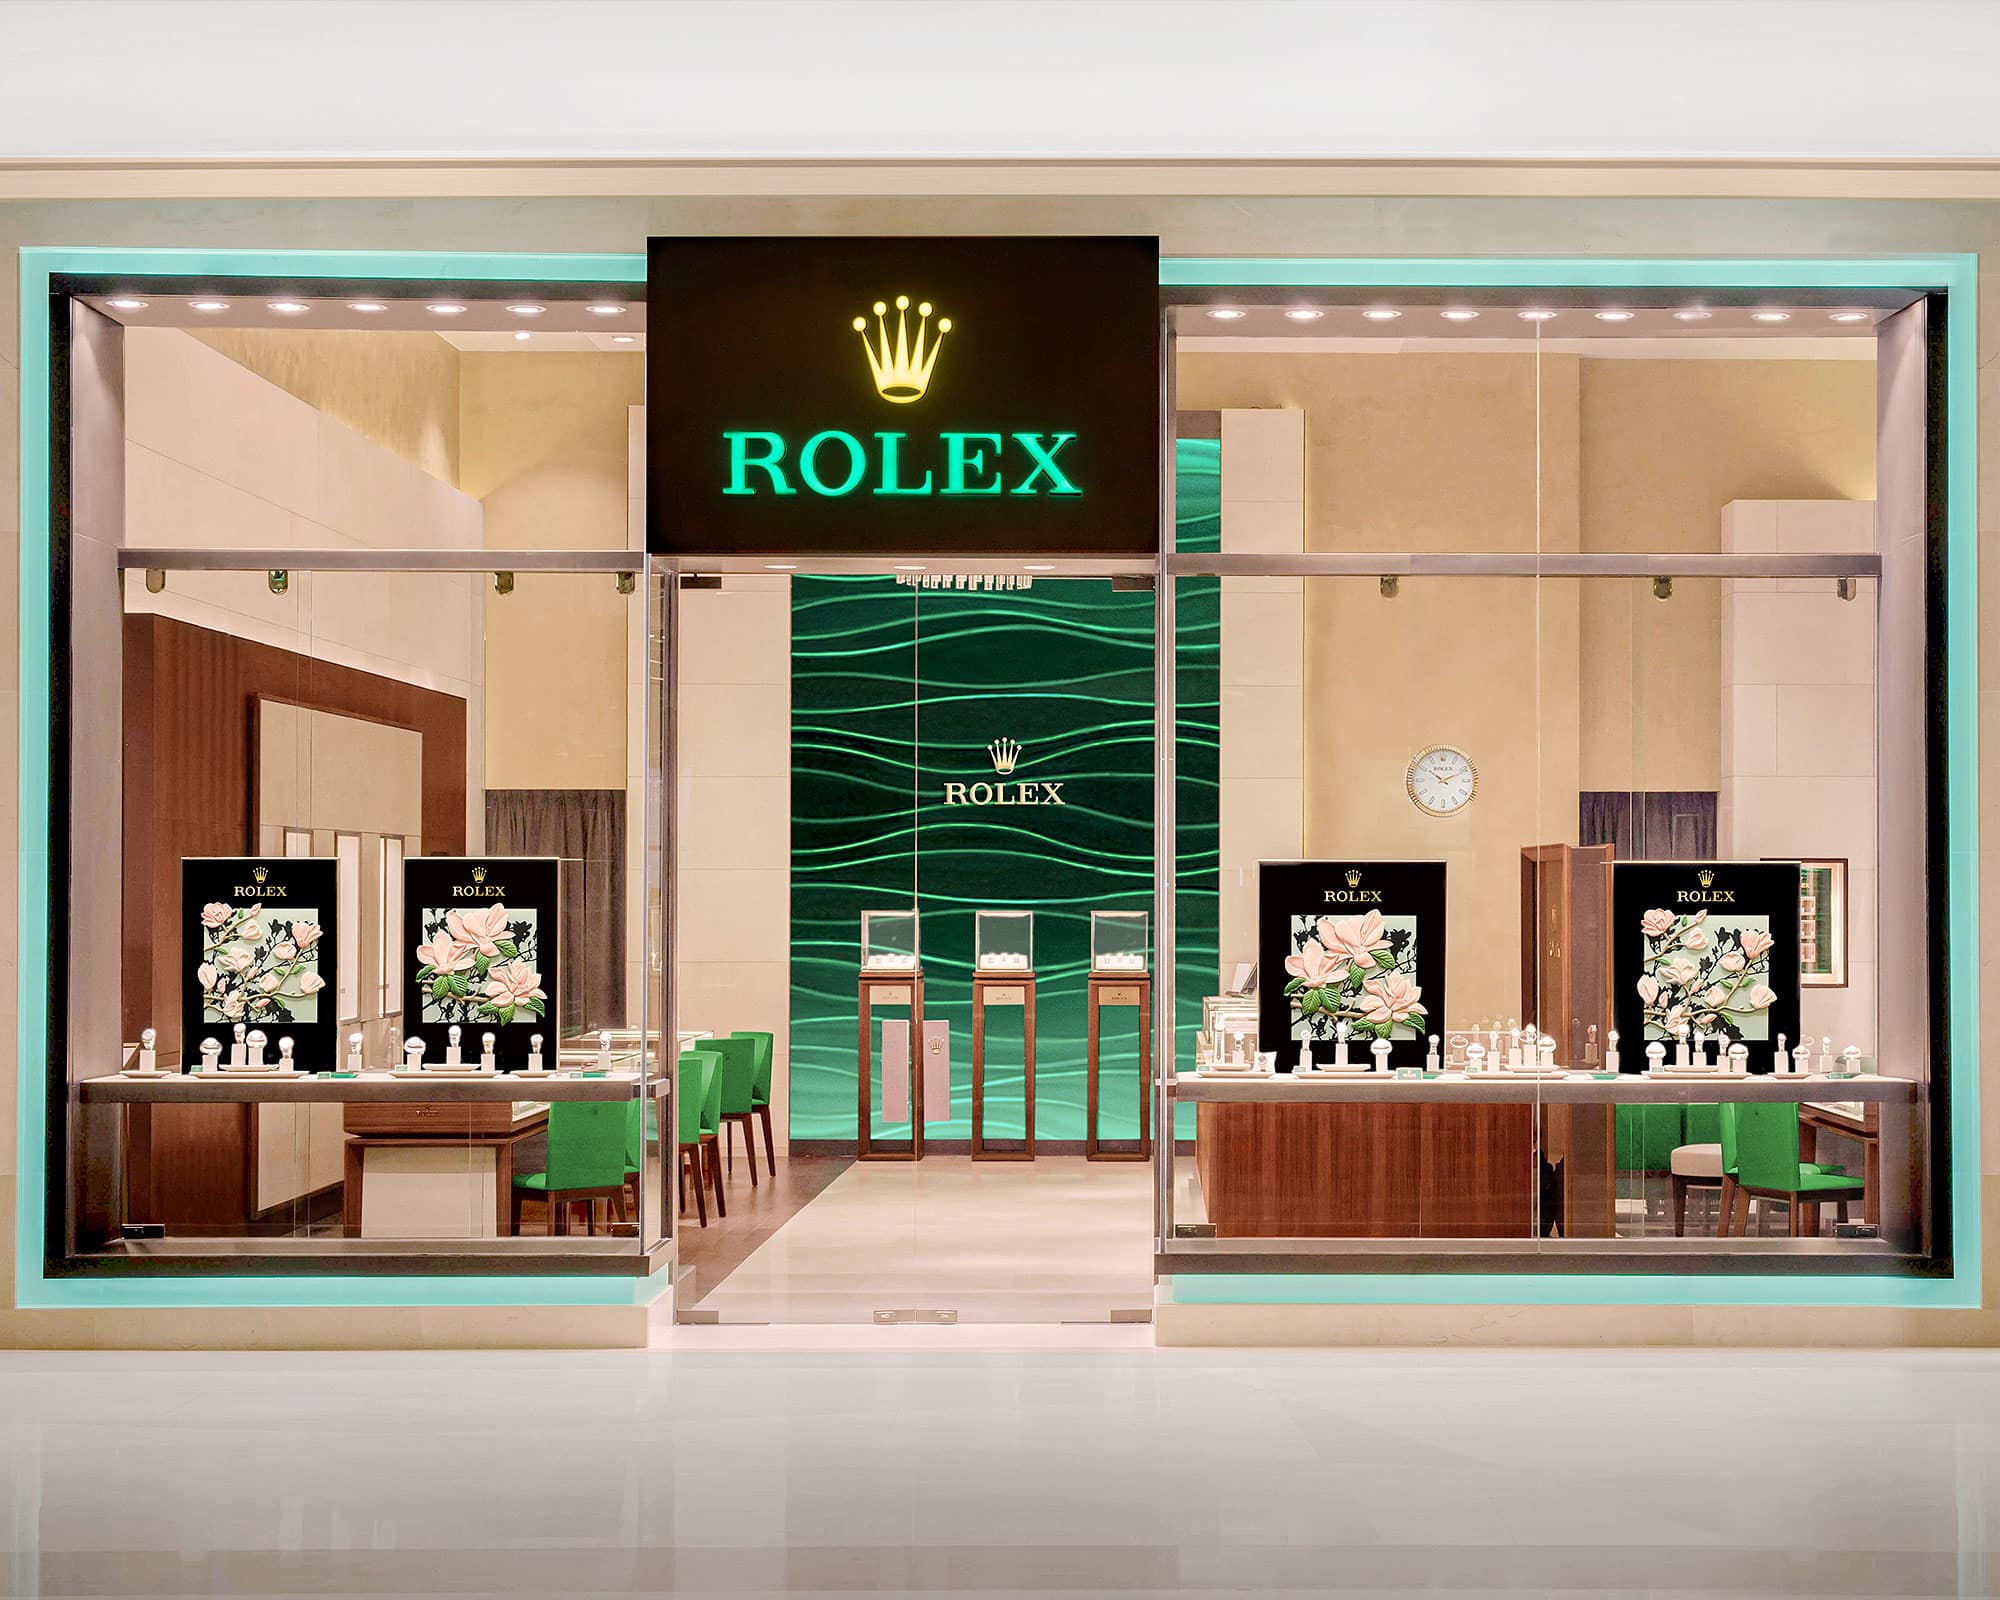 Time Midas - Official Rolex Retailer 